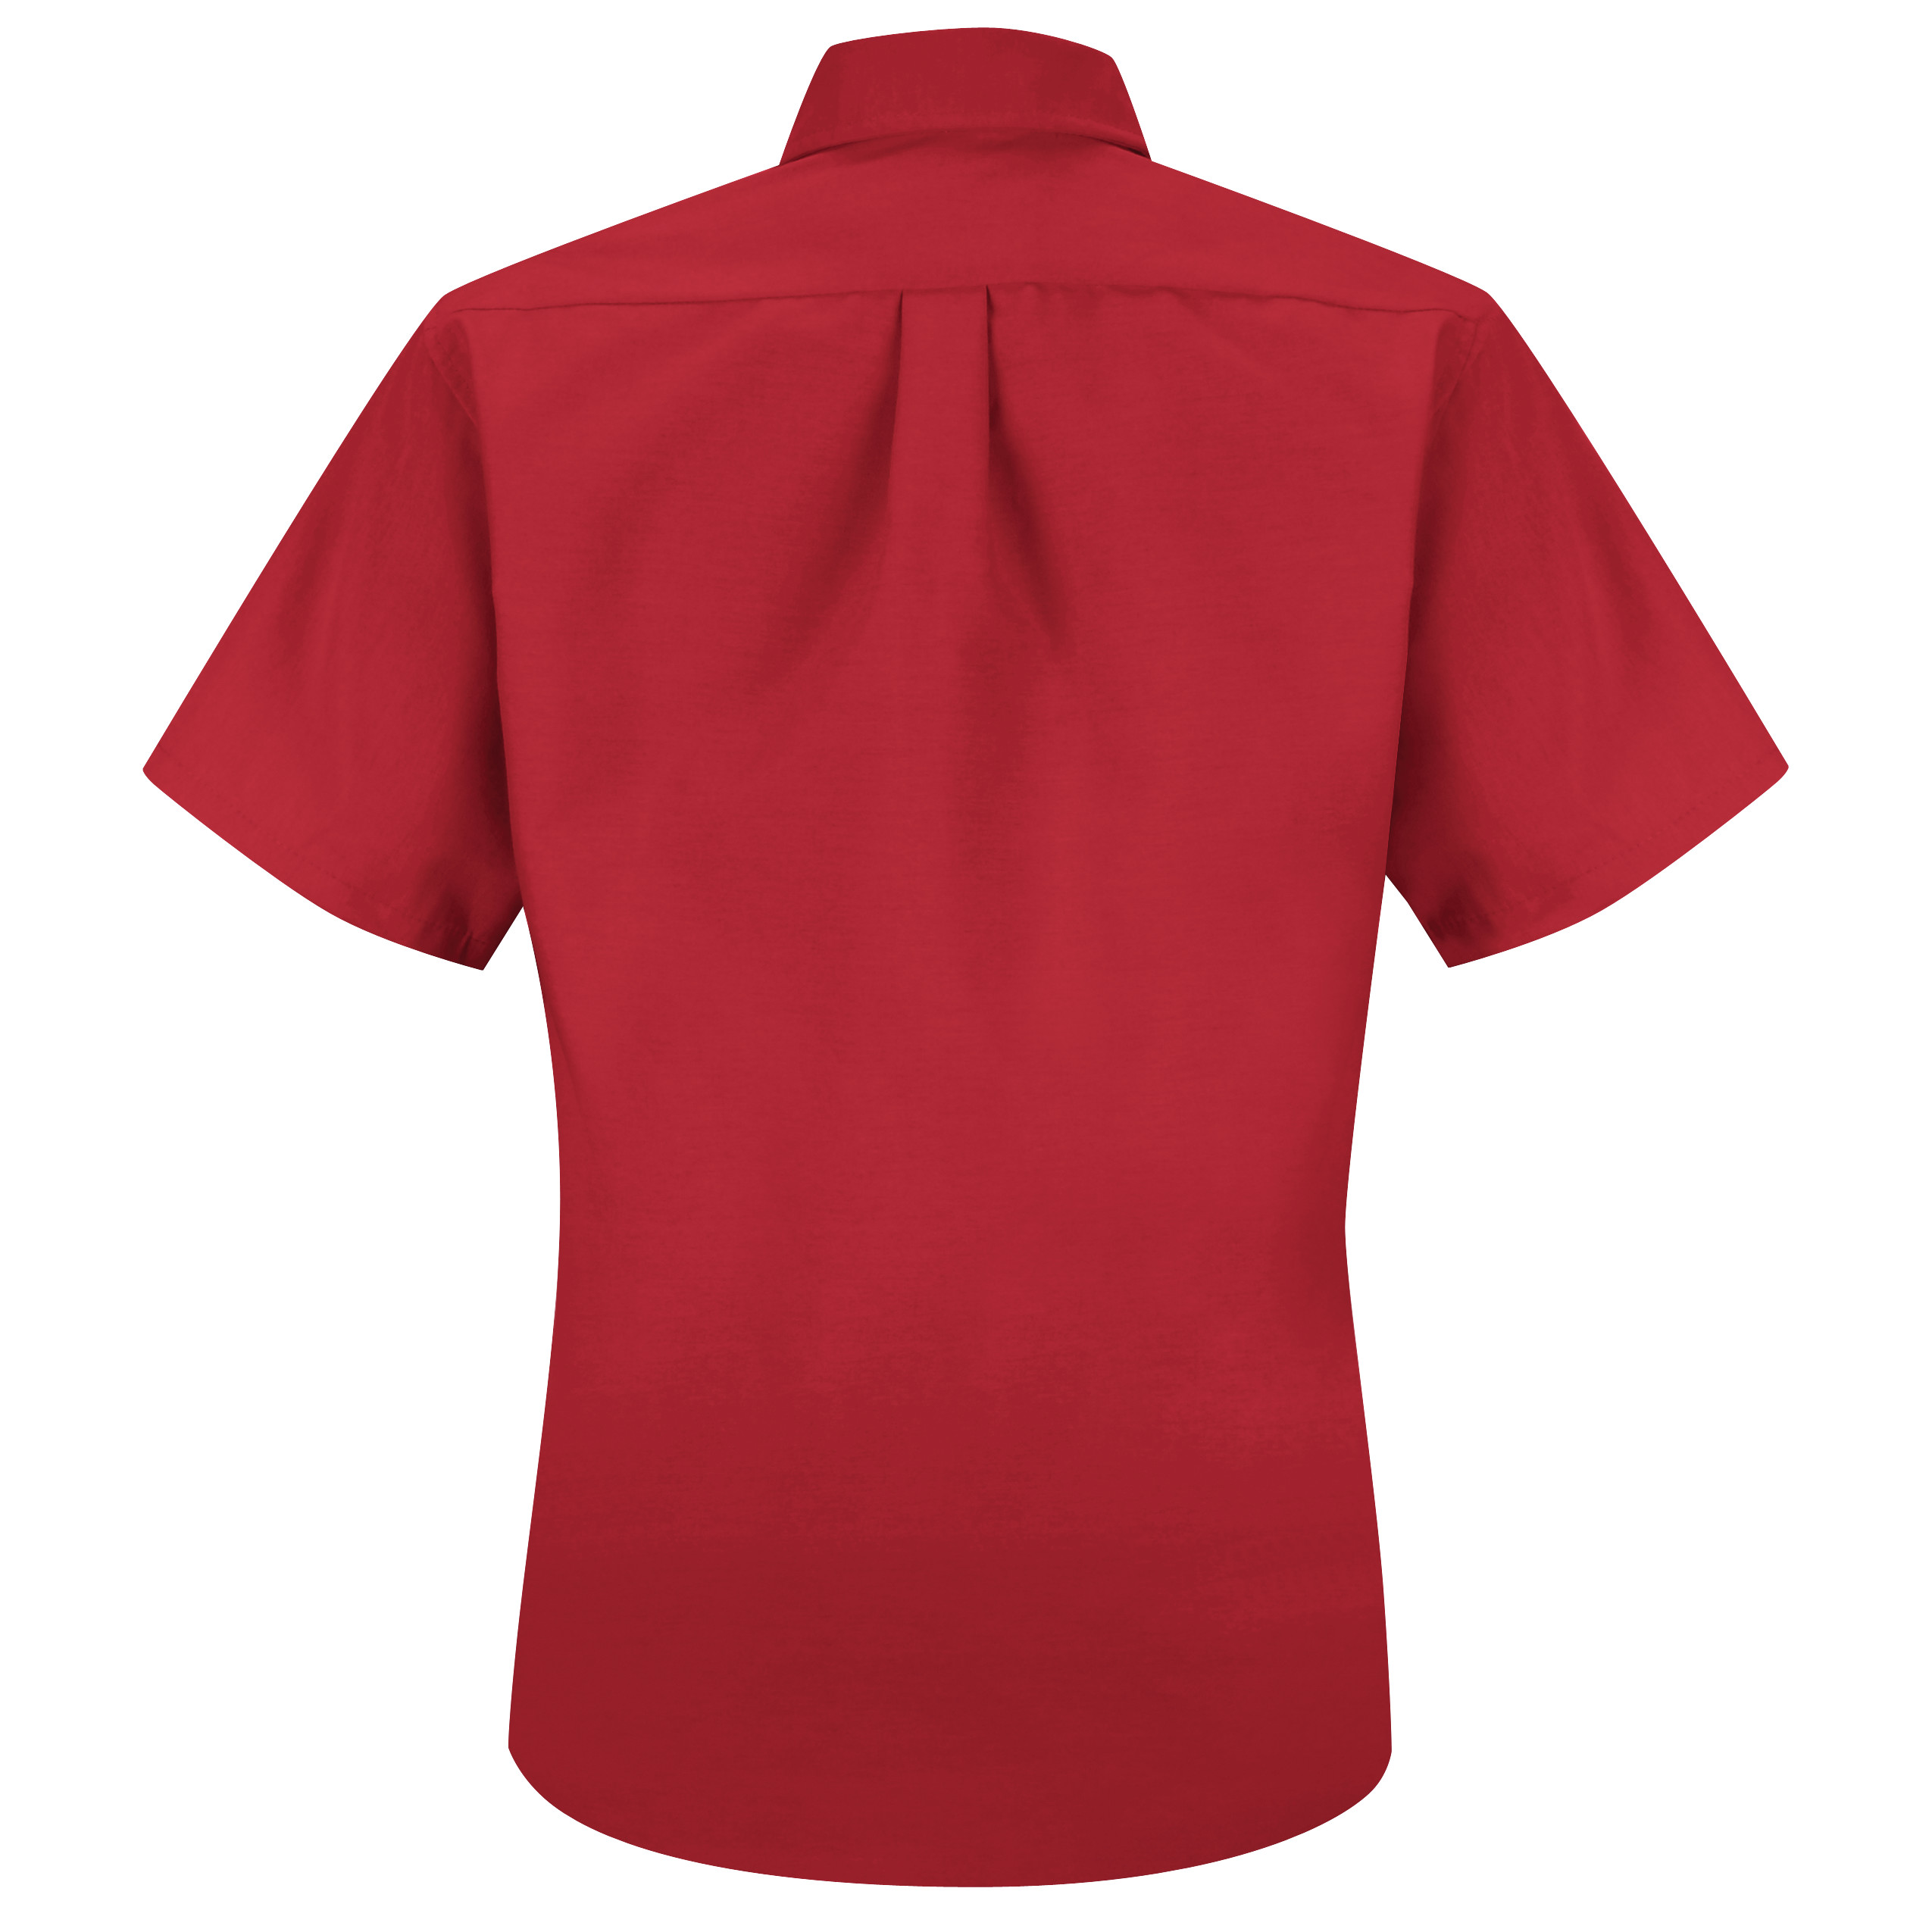 Picture of Red Kap® SP81 Women's Short Sleeve Poplin Dress Shirt